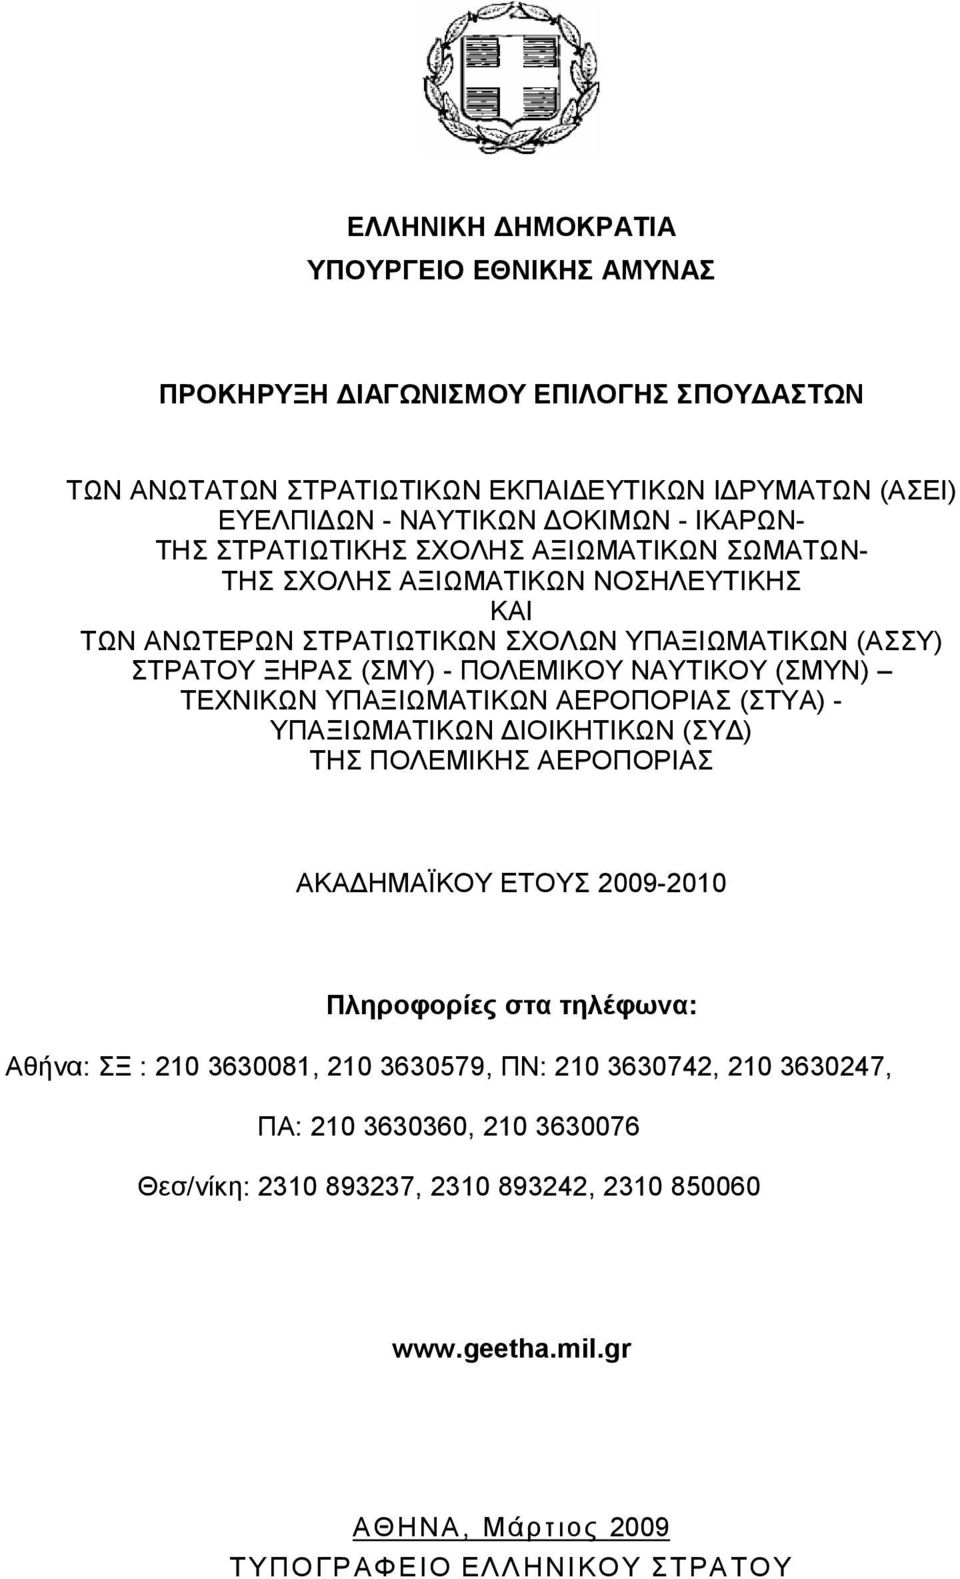 (ΣΜΥΝ) ΤΕΧΝΙΚΩΝ ΥΠΑΞΙΩΜΑΤΙΚΩΝ ΑΕΡΟΠΟΡΙΑΣ (ΣΤΥΑ) - ΥΠΑΞΙΩΜΑΤΙΚΩΝ ΙΟΙΚΗΤΙΚΩΝ (ΣΥ ) ΤΗΣ ΠΟΛΕΜΙΚΗΣ ΑΕΡΟΠΟΡΙΑΣ ΑΚΑ ΗΜΑΪΚΟΥ ΕΤΟΥΣ 2009-2010 Πληροφορίες στα τηλέφωνα: Αθήνα: ΣΞ : 210